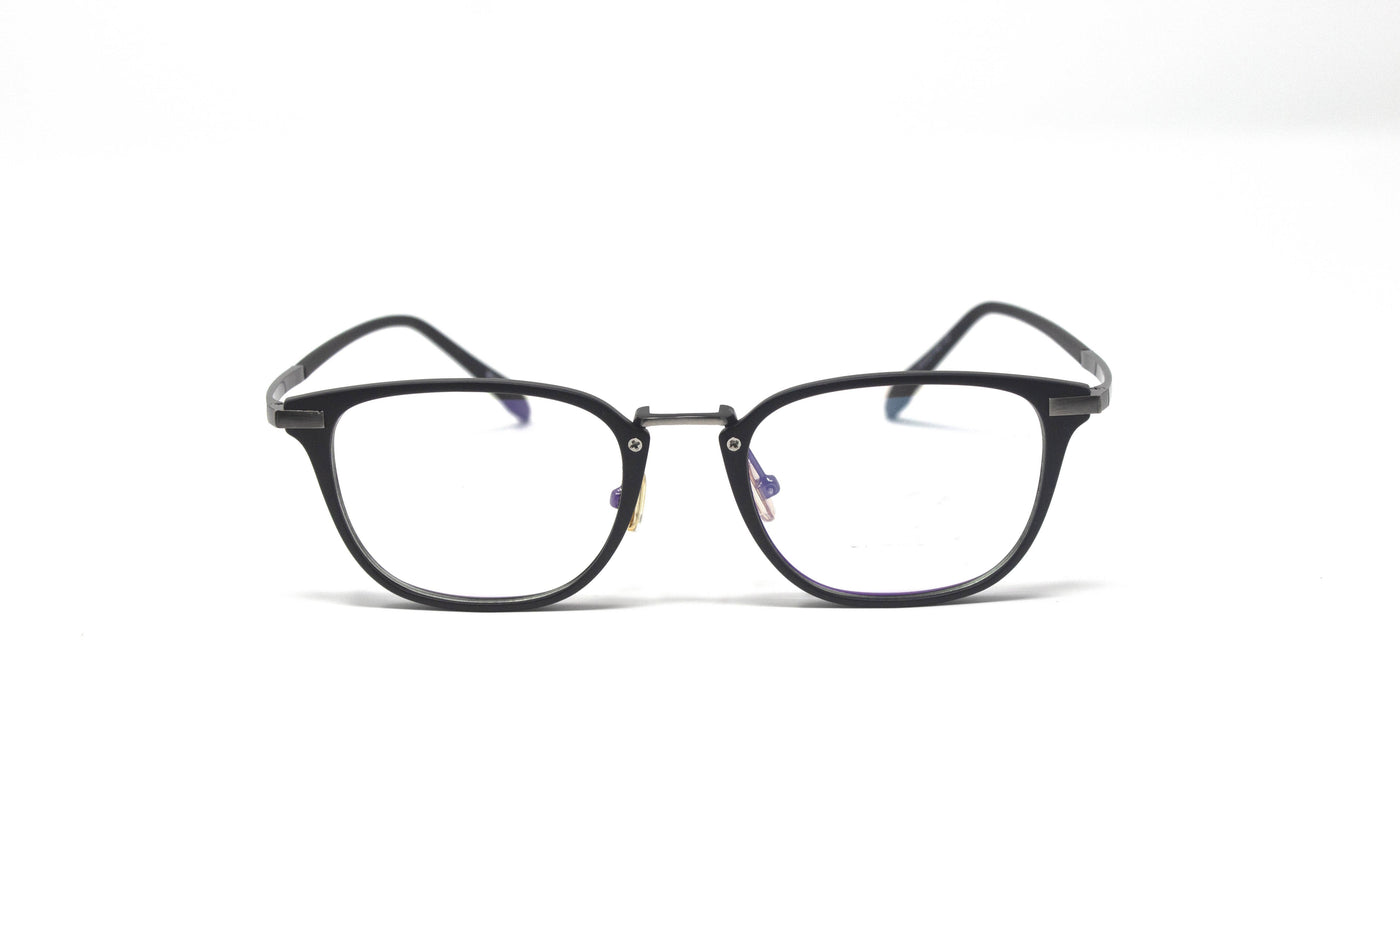 Stylish Optical Square Black Frame Eyewear